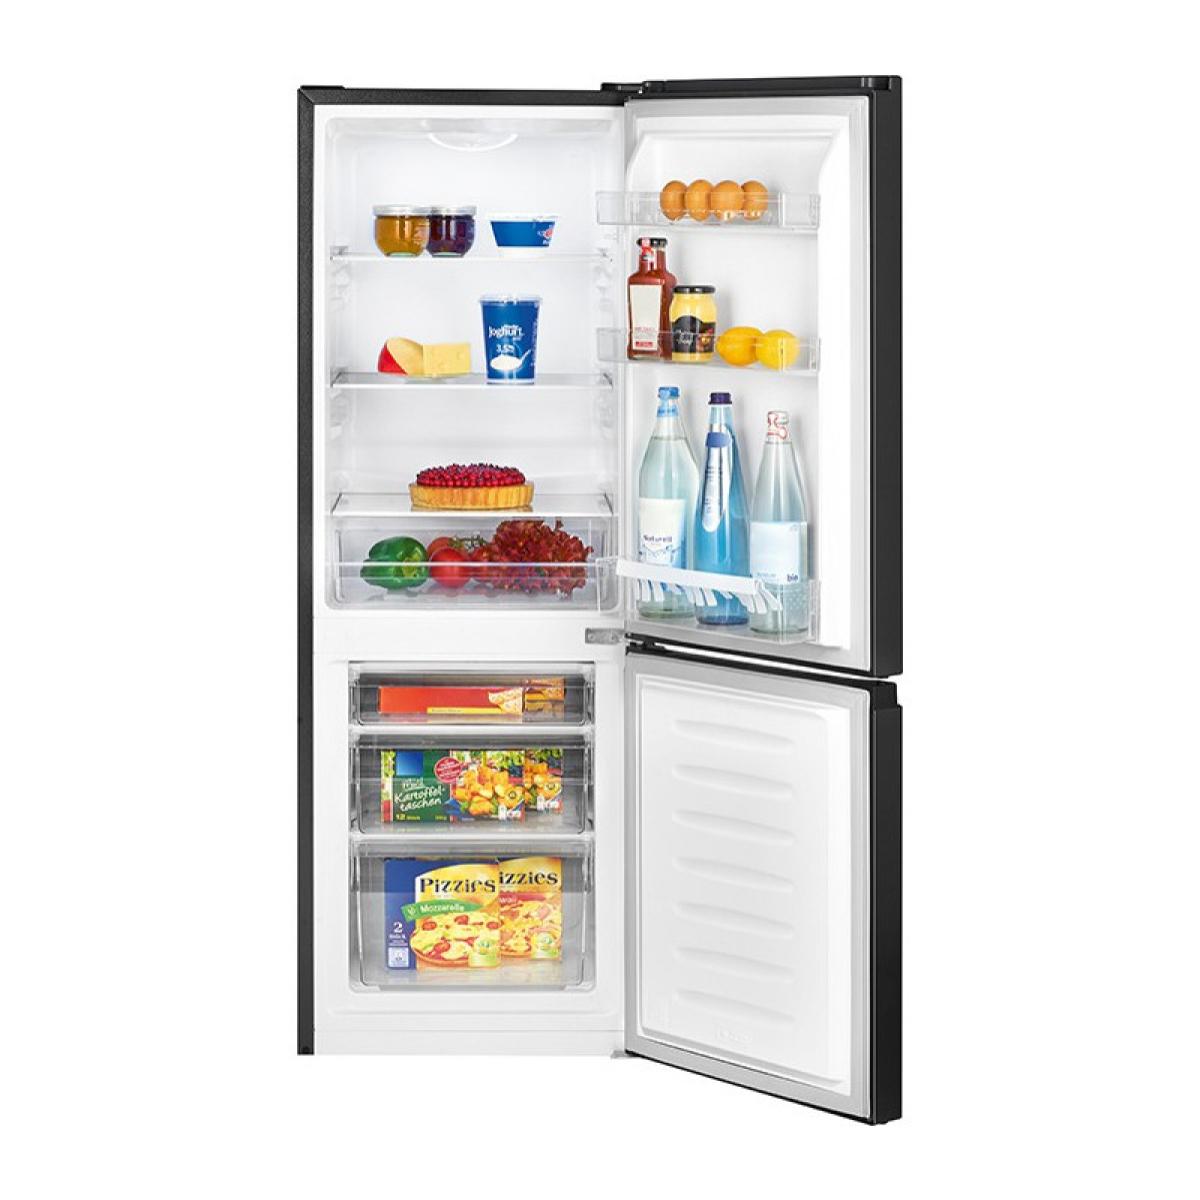 Réfrigérateur et congélateur 175L noir Bomann KG 322.1 noir